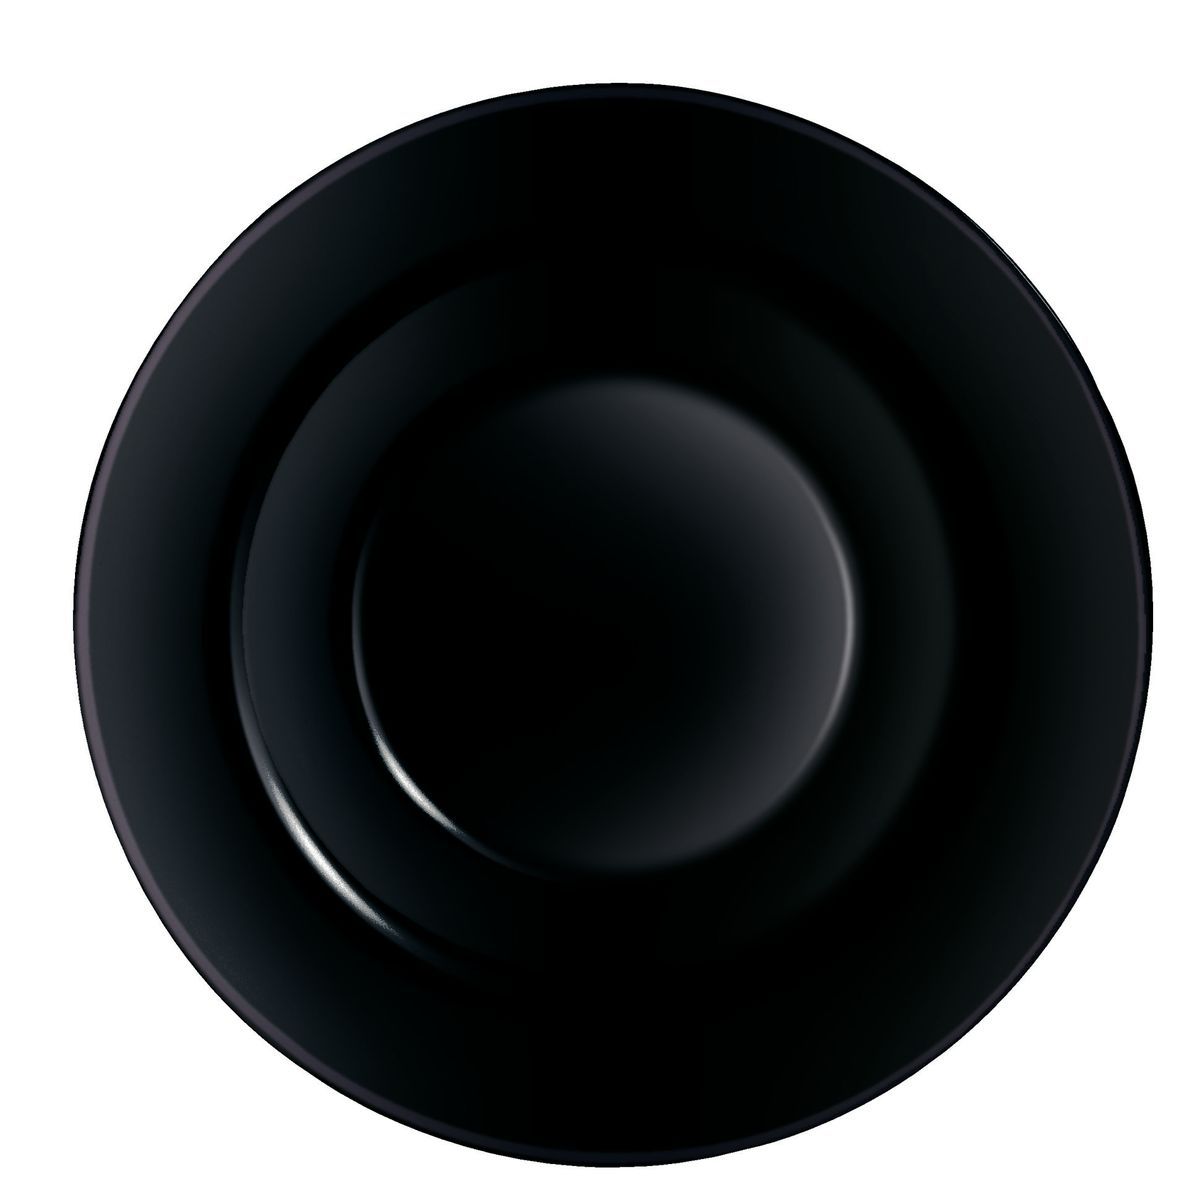 Pjatë opali Assiette A Pates Noir (Zezë), Ø28.5 cm